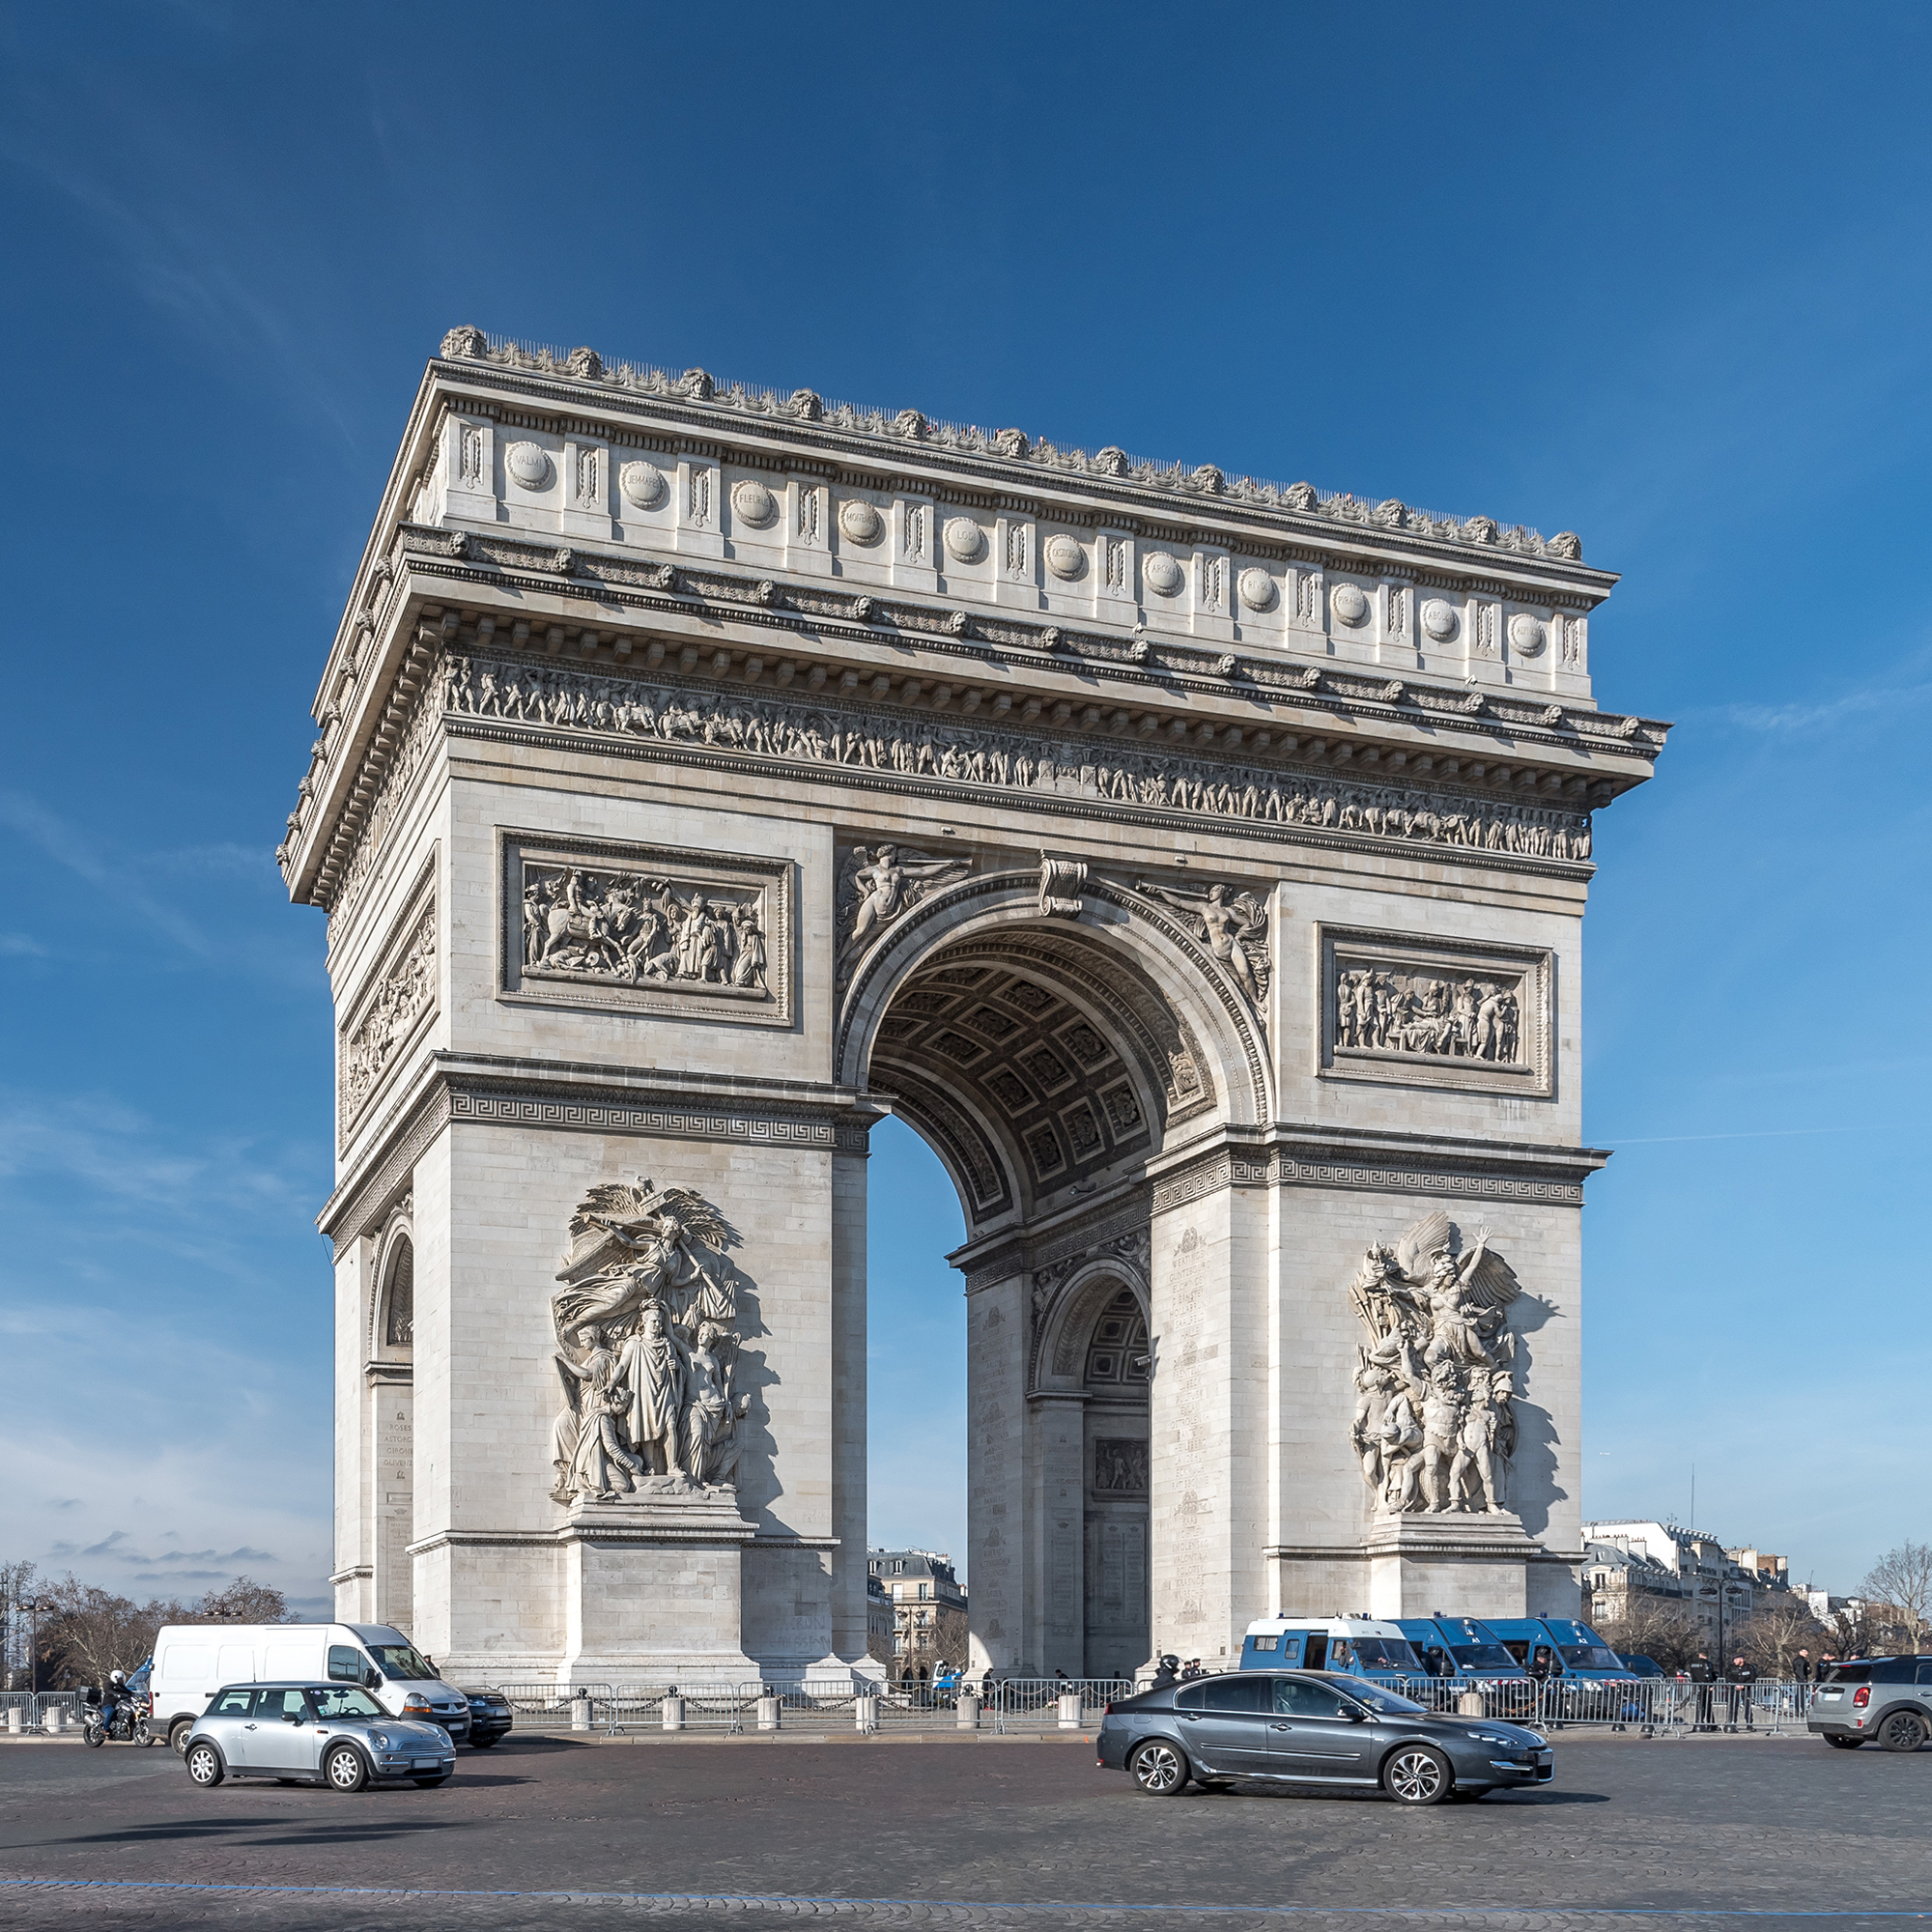 拿破崙的古羅馬情懷—仿傚古羅馬建築的法國巴黎凱旋門